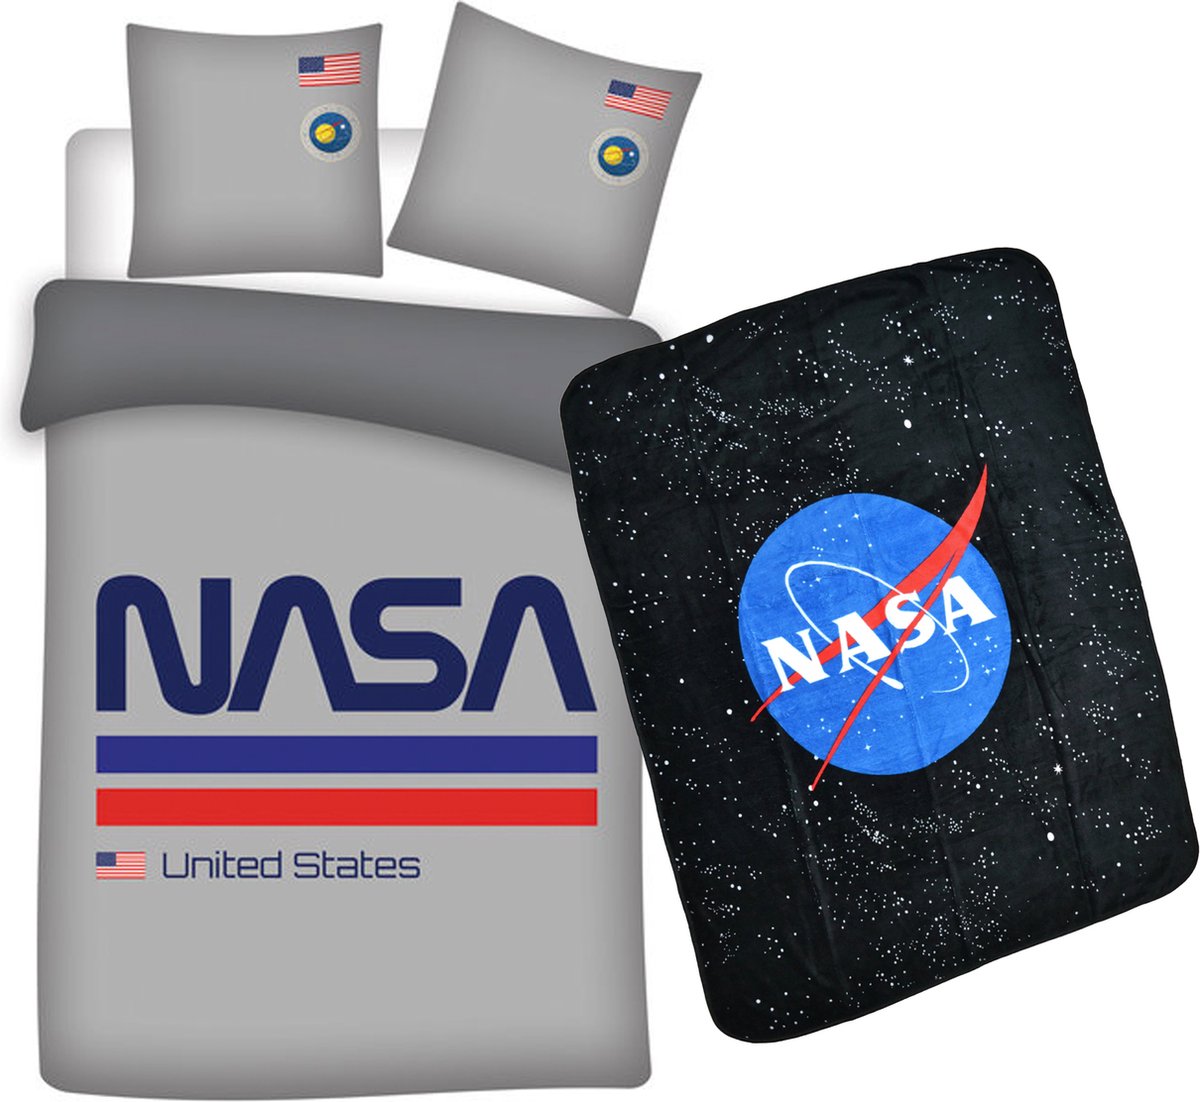 Dekbedovertrek NASA- ruimtevaart- 1persoons- 140x200cm- Polyester- incl. NASA Fleece deken 120x150cm.